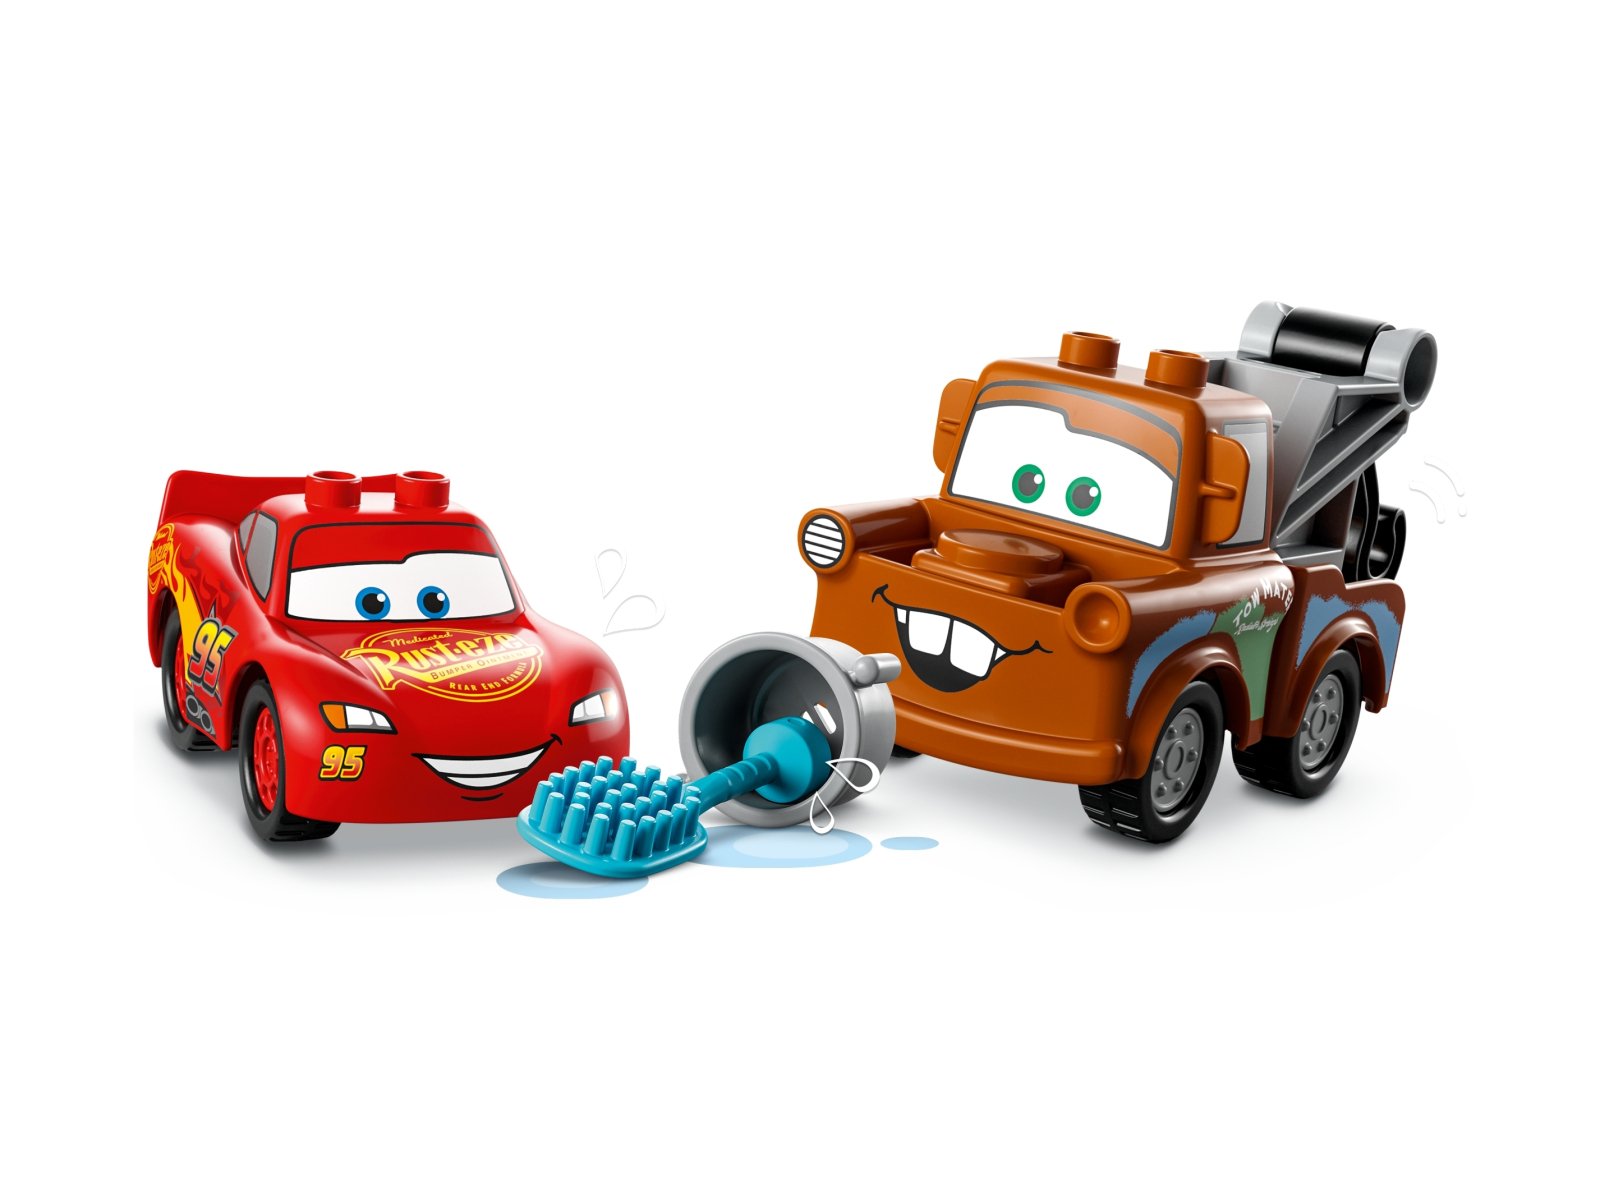 LEGO 10996 Duplo Zygzak McQueen i Złomek — myjnia